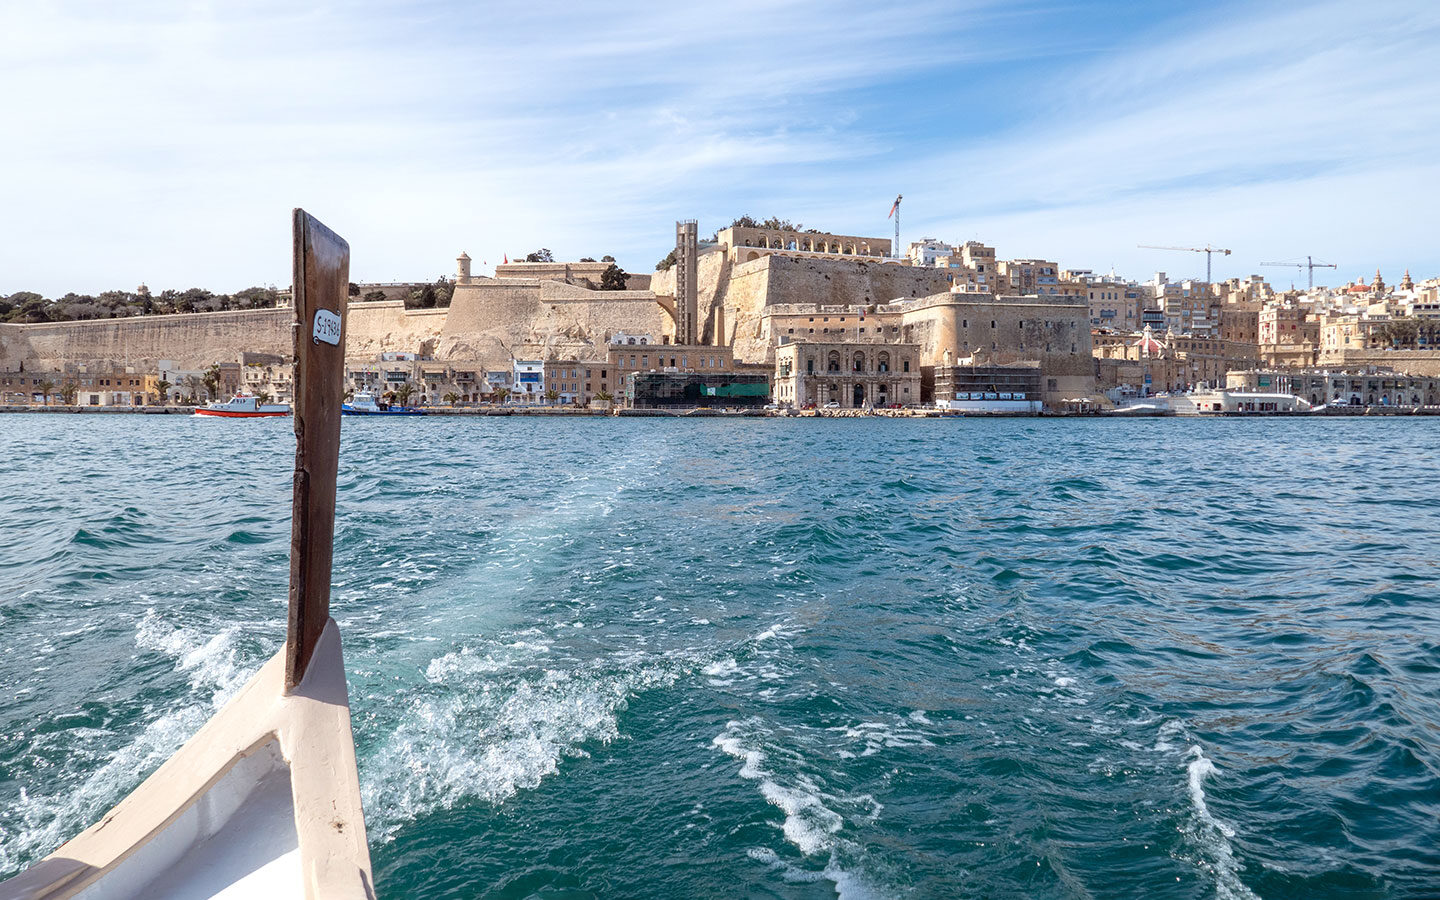 On board a traditional dgħajsa boat from Valletta to the Three Cities